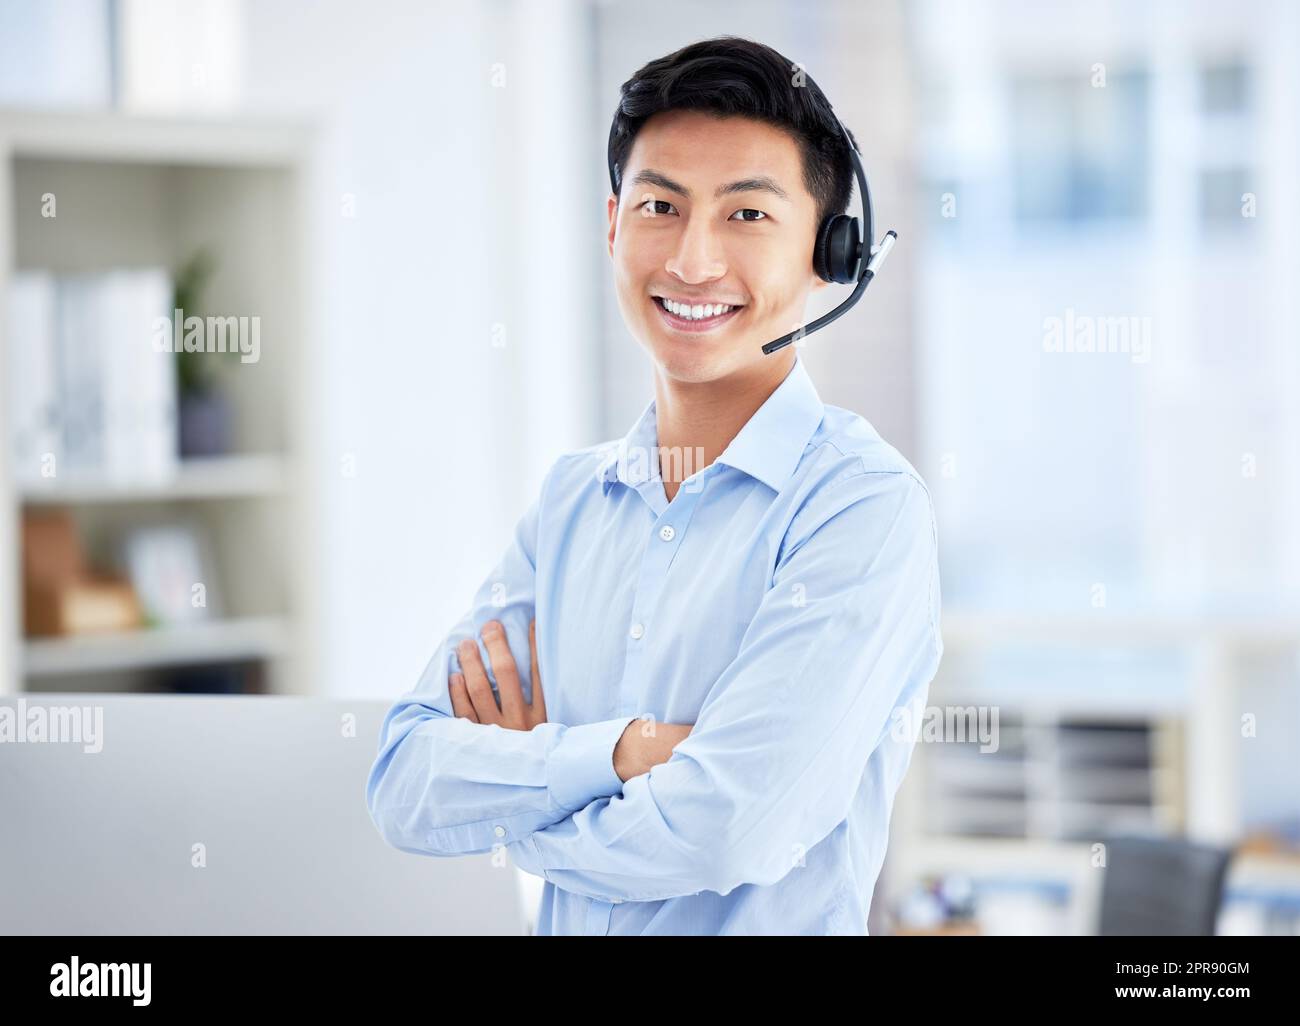 Porträt eines asiatischen Callcenter-Agenten, der im Büro mit gekreuzten Armen ein Headset trägt. Selbstbewusster und lächelnder Geschäftsmann, der einen Helpdesk für den Vertrieb und Service betreibt Stockfoto